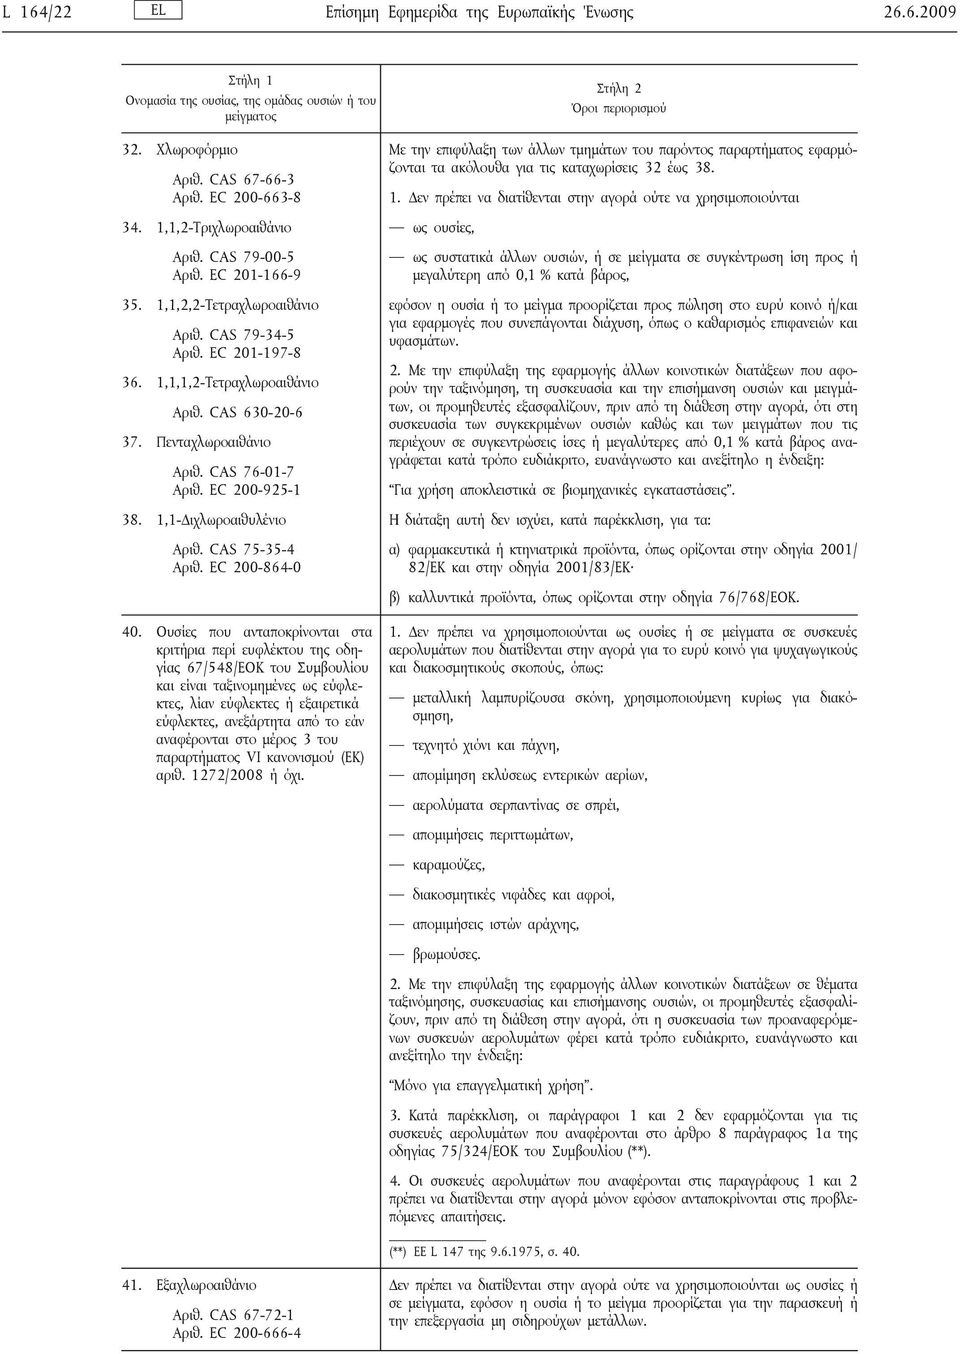 1,1-Διχλωροαιθυλένιο Αριθ. CAS 75-35-4 Αριθ. EC 200-864-0 40.